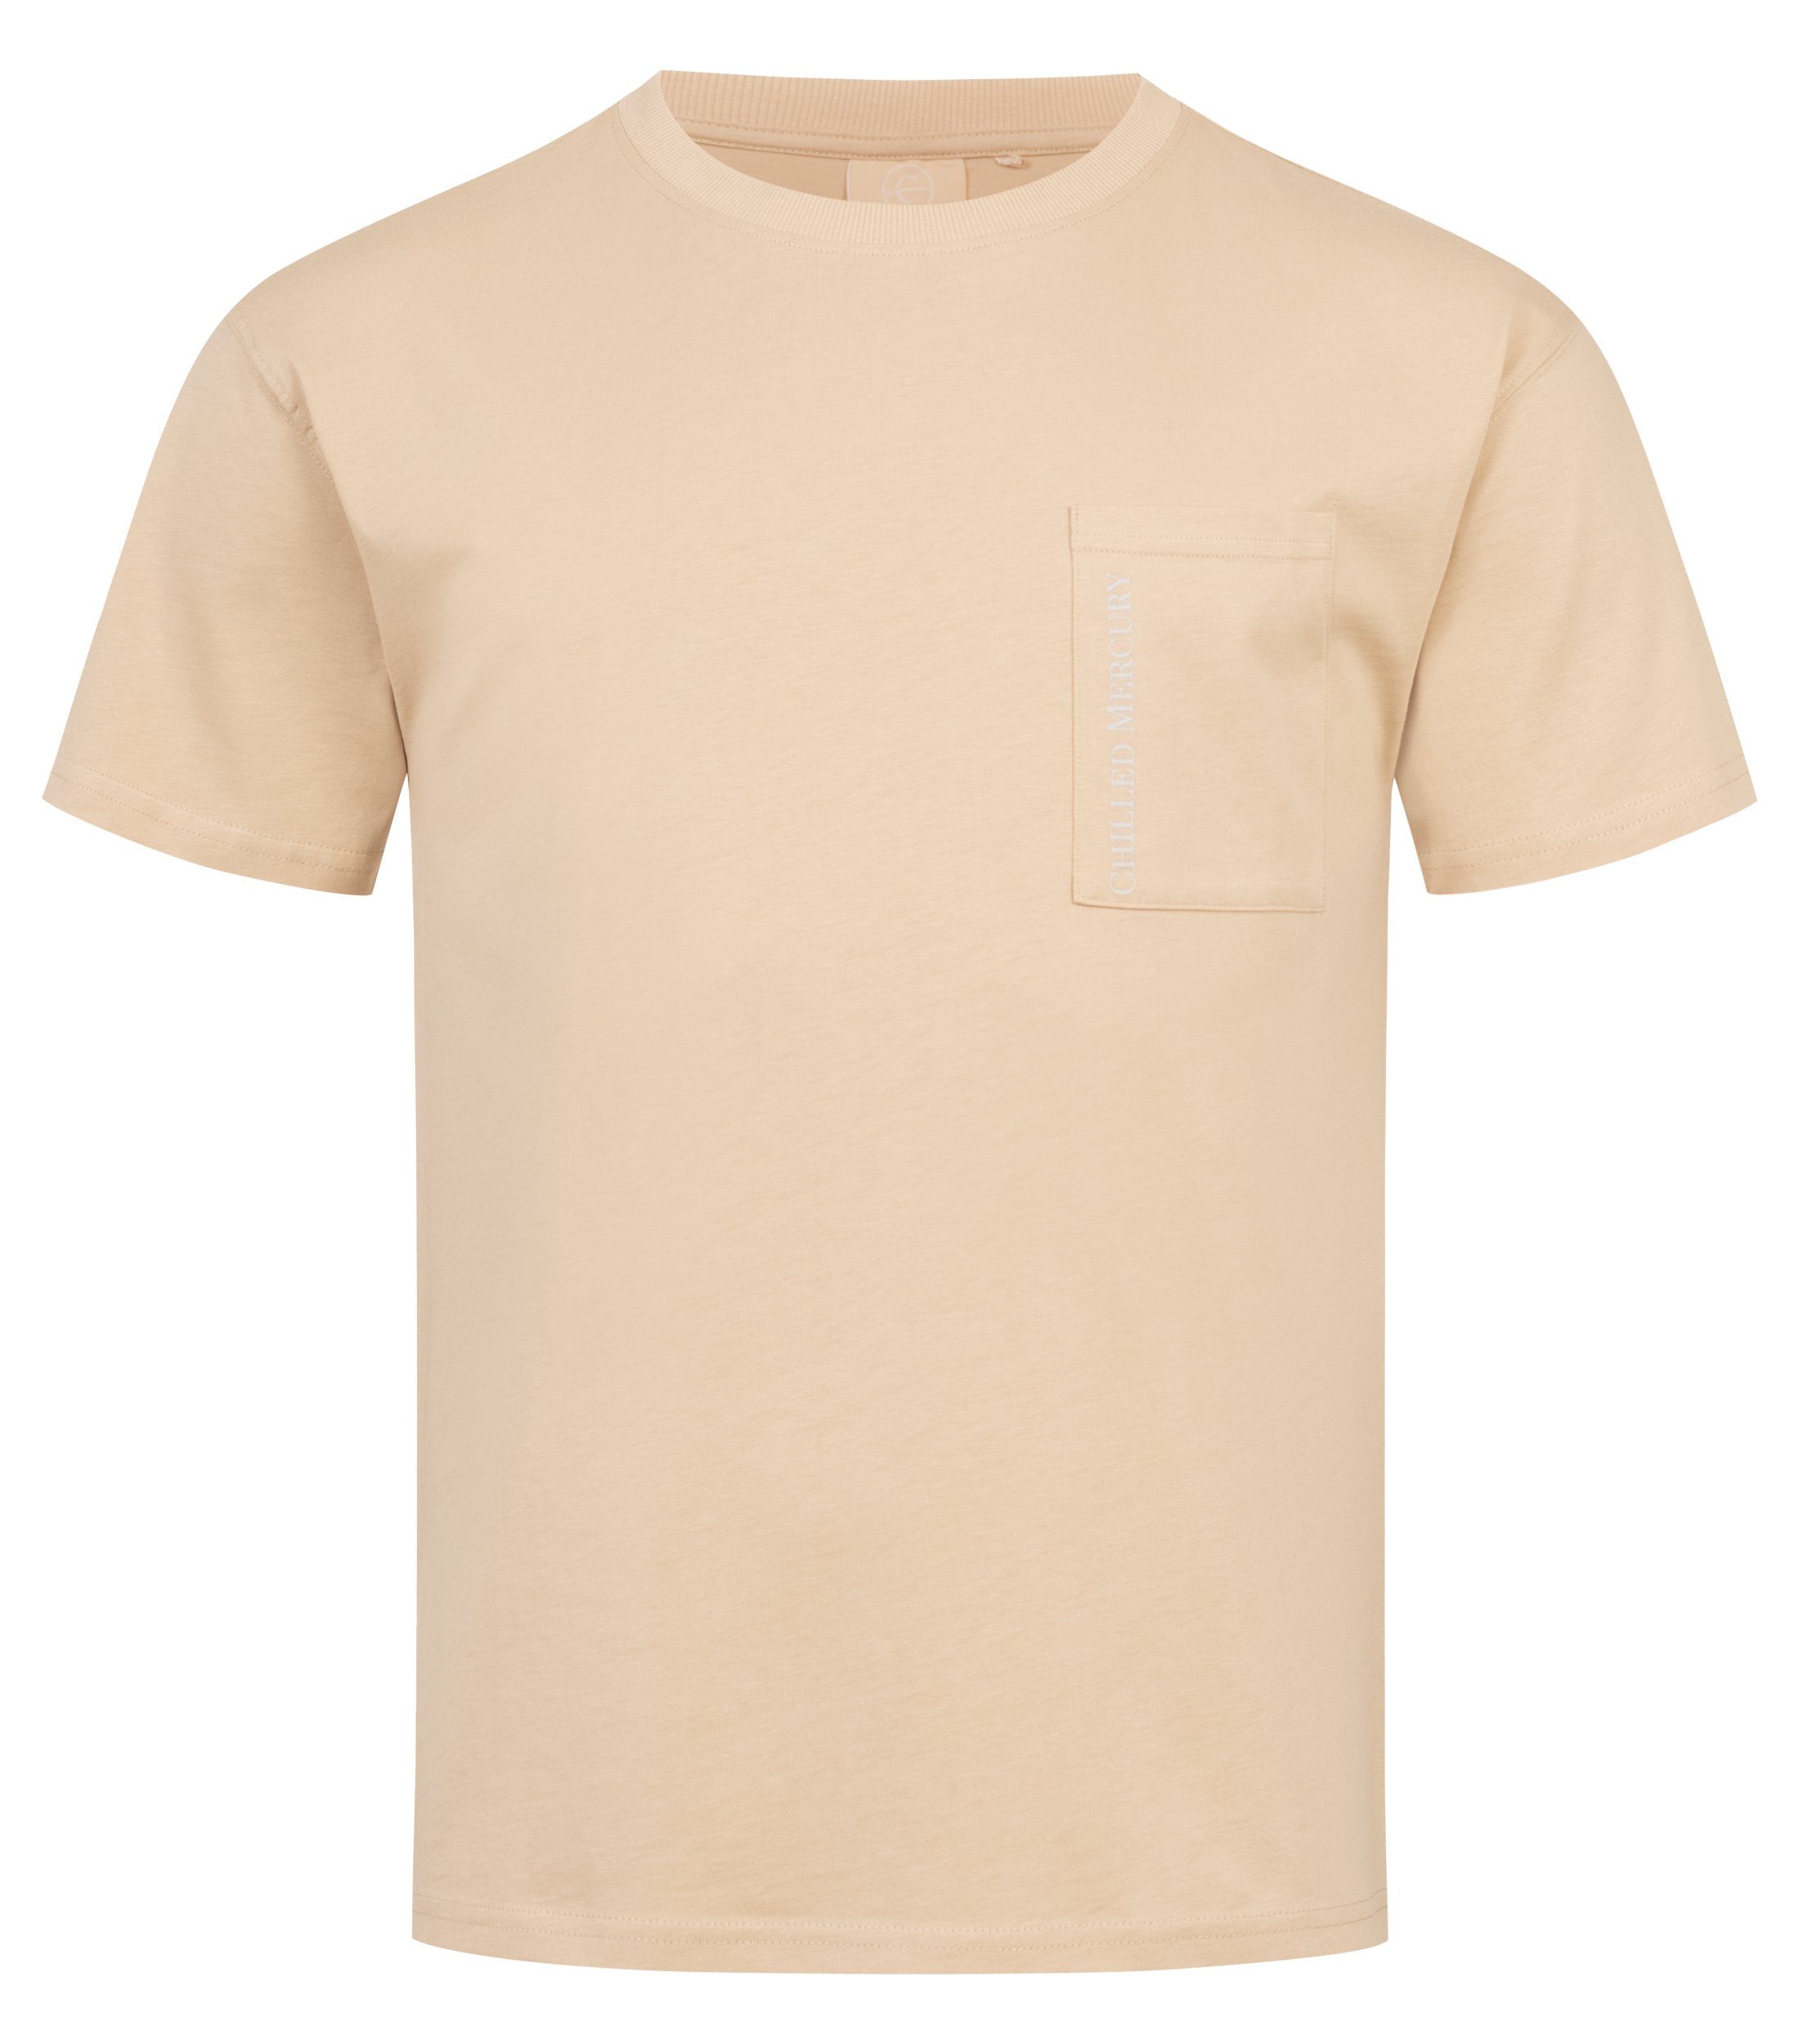 Chilled Mercury T-Shirt Baumwolle Freizeit Rundhals Shirt/ Cream Irish mit Brusttasche